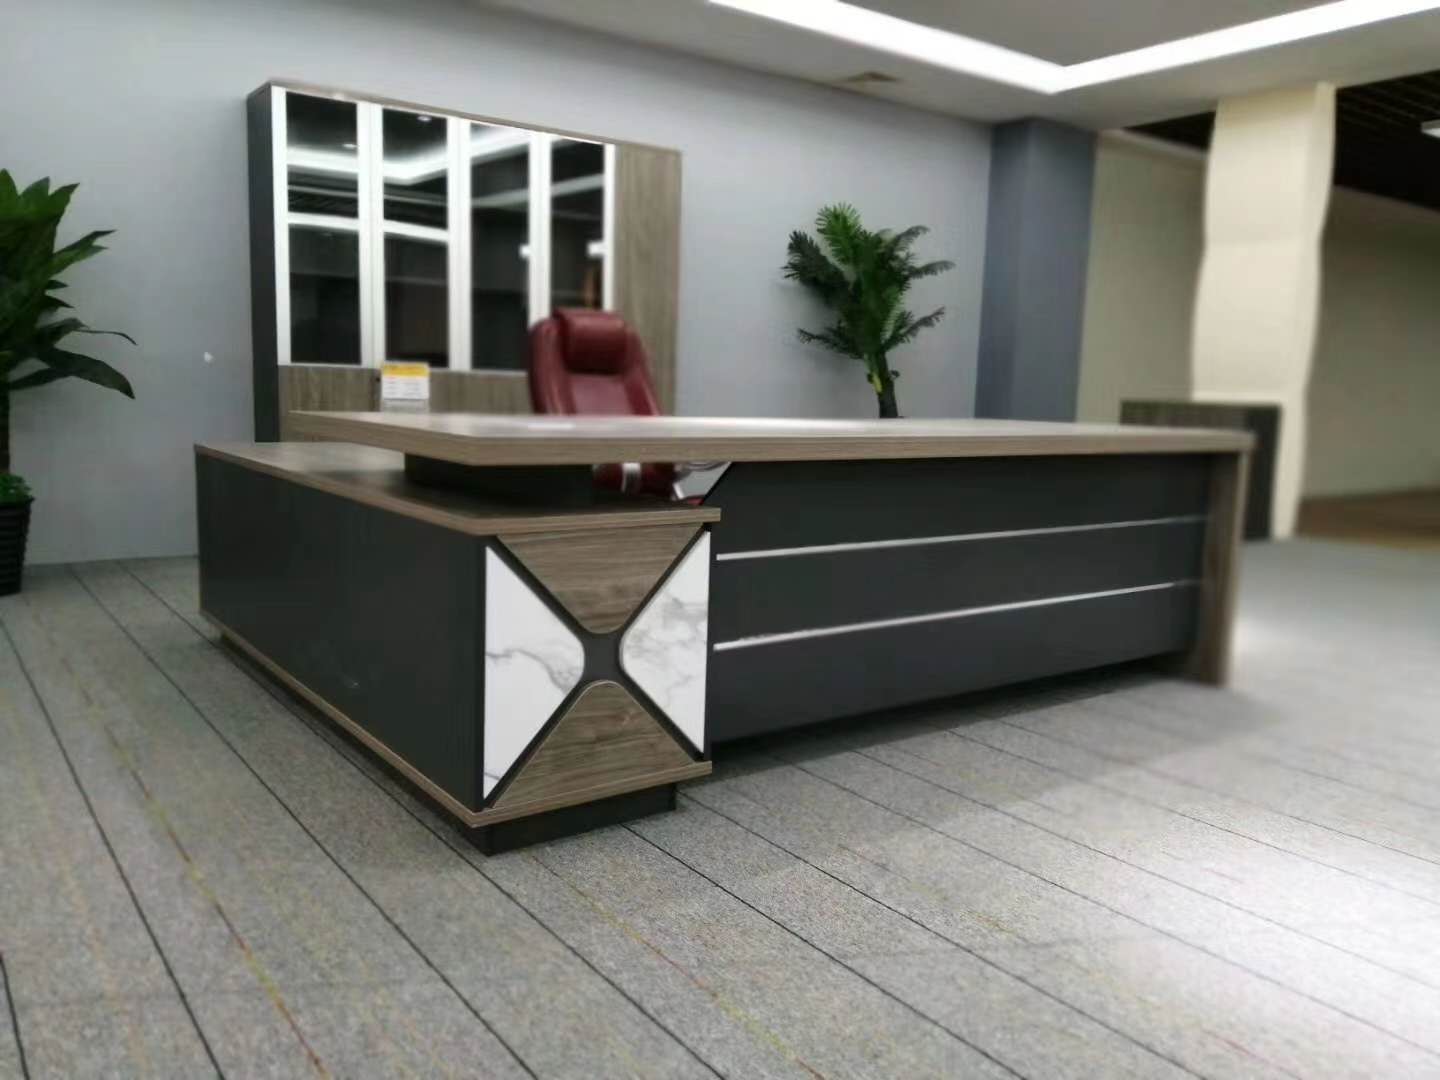 蘇州曼特斯爾家具有限公司丨辦公空間一般配置哪些辦公家具?